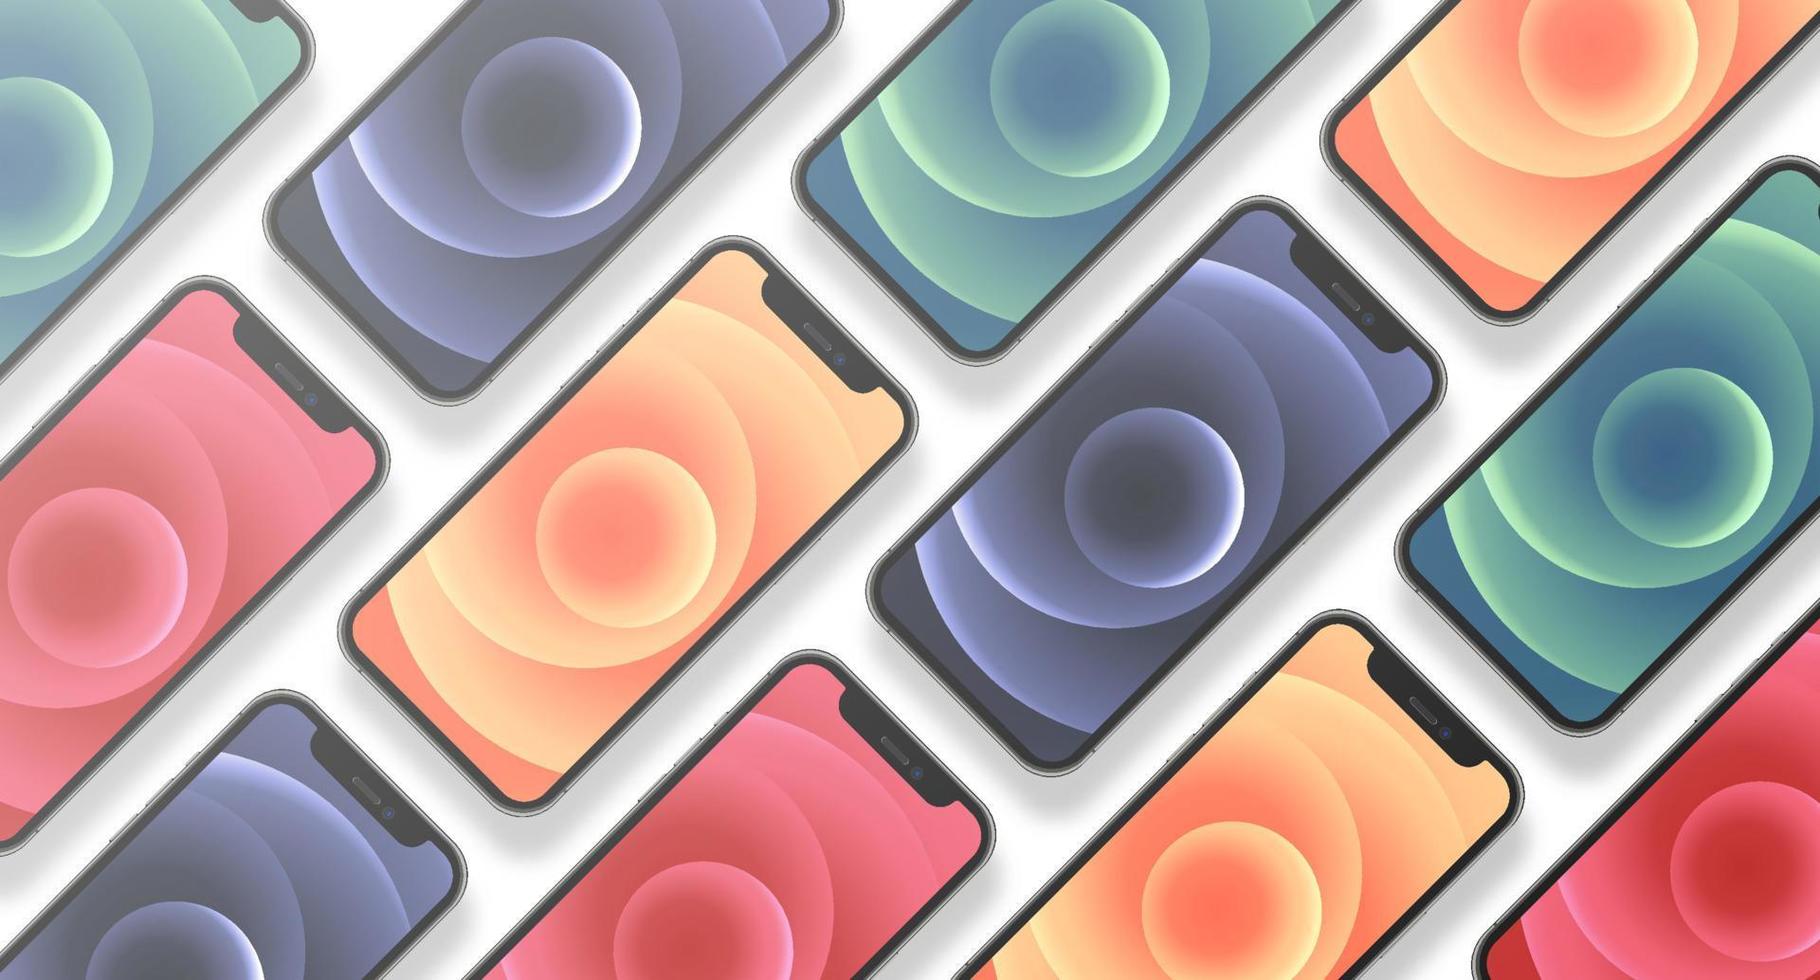 nouvel iphone 12 pro ou pro max en quatre couleurs graphite, bleu pacifique, argent, or par apple inc. écran iphone et arrière iphone. illustration vectorielle vecteur